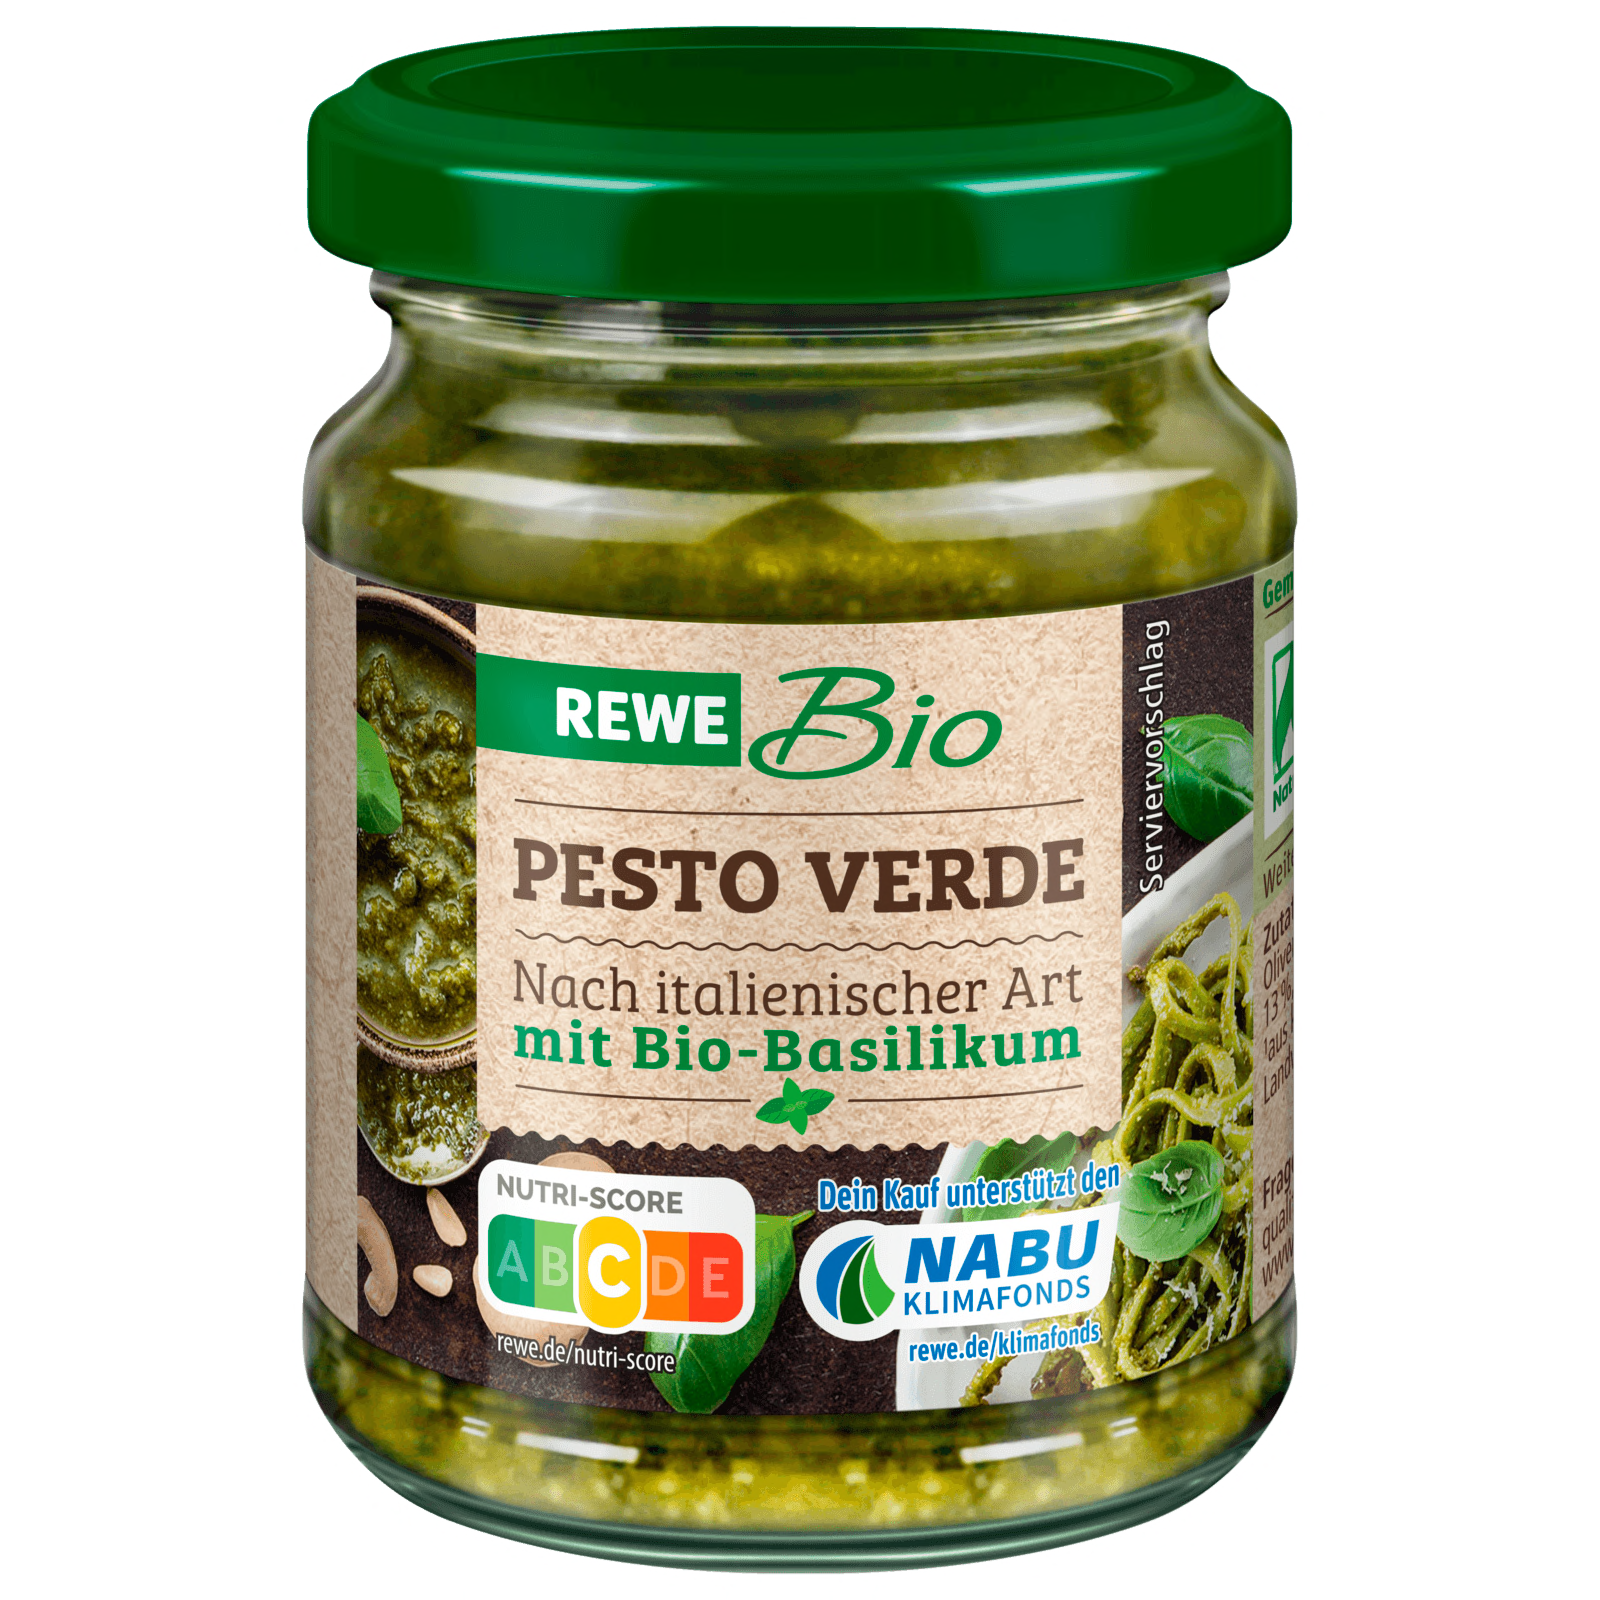 REWE Bio Pesto Verde Vegan 130g bei REWE online bestellen!